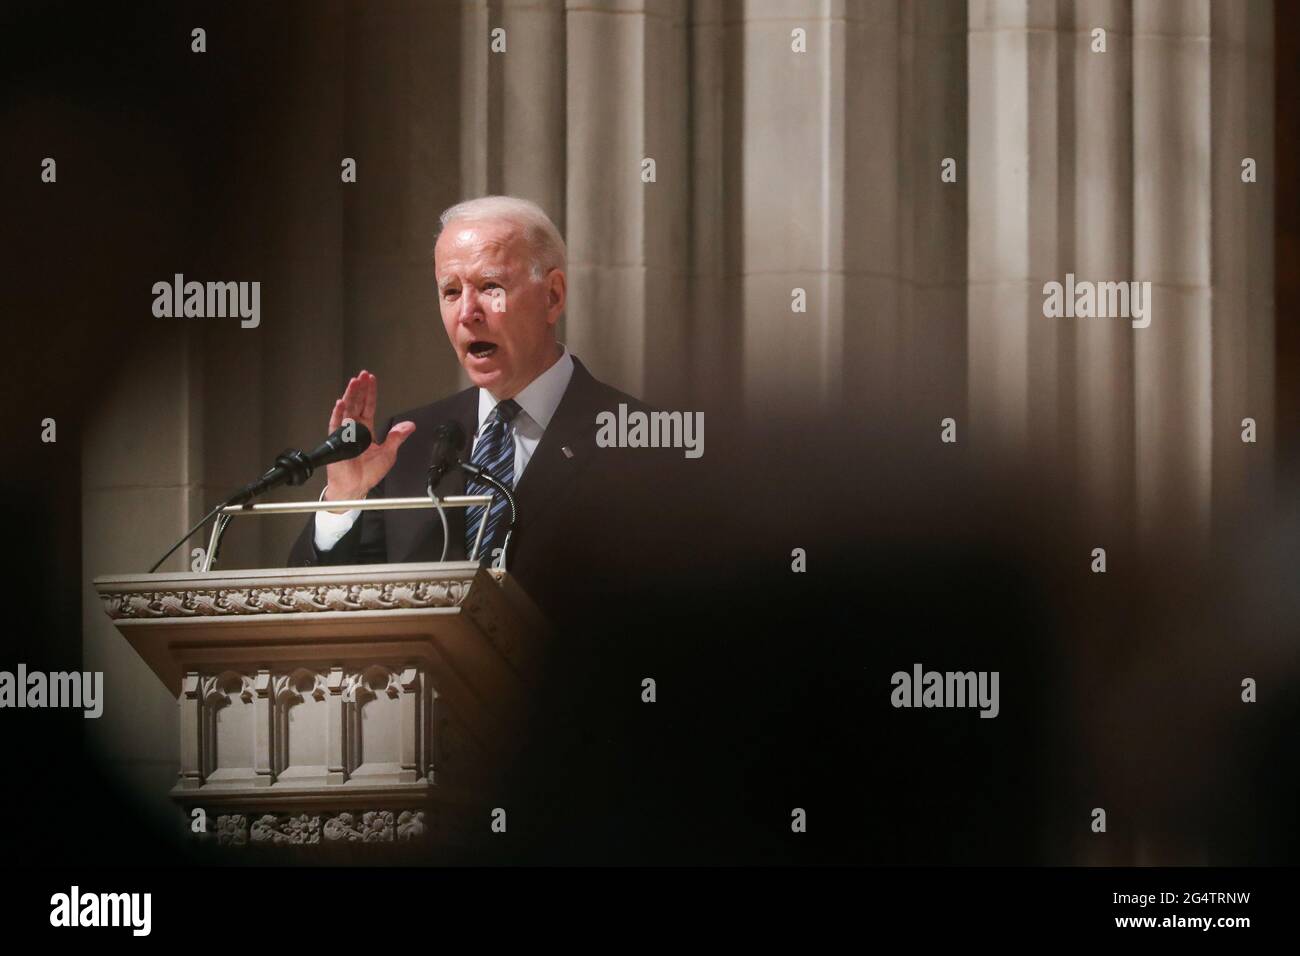 Le président américain Joe Biden parle lors de la cérémonie funéraire de l'ancien sénateur John Warner à la cathédrale nationale de Washington, DC, États-Unis le 23 juin 2021. Oliver Contreras/Pool via REUTERS Banque D'Images